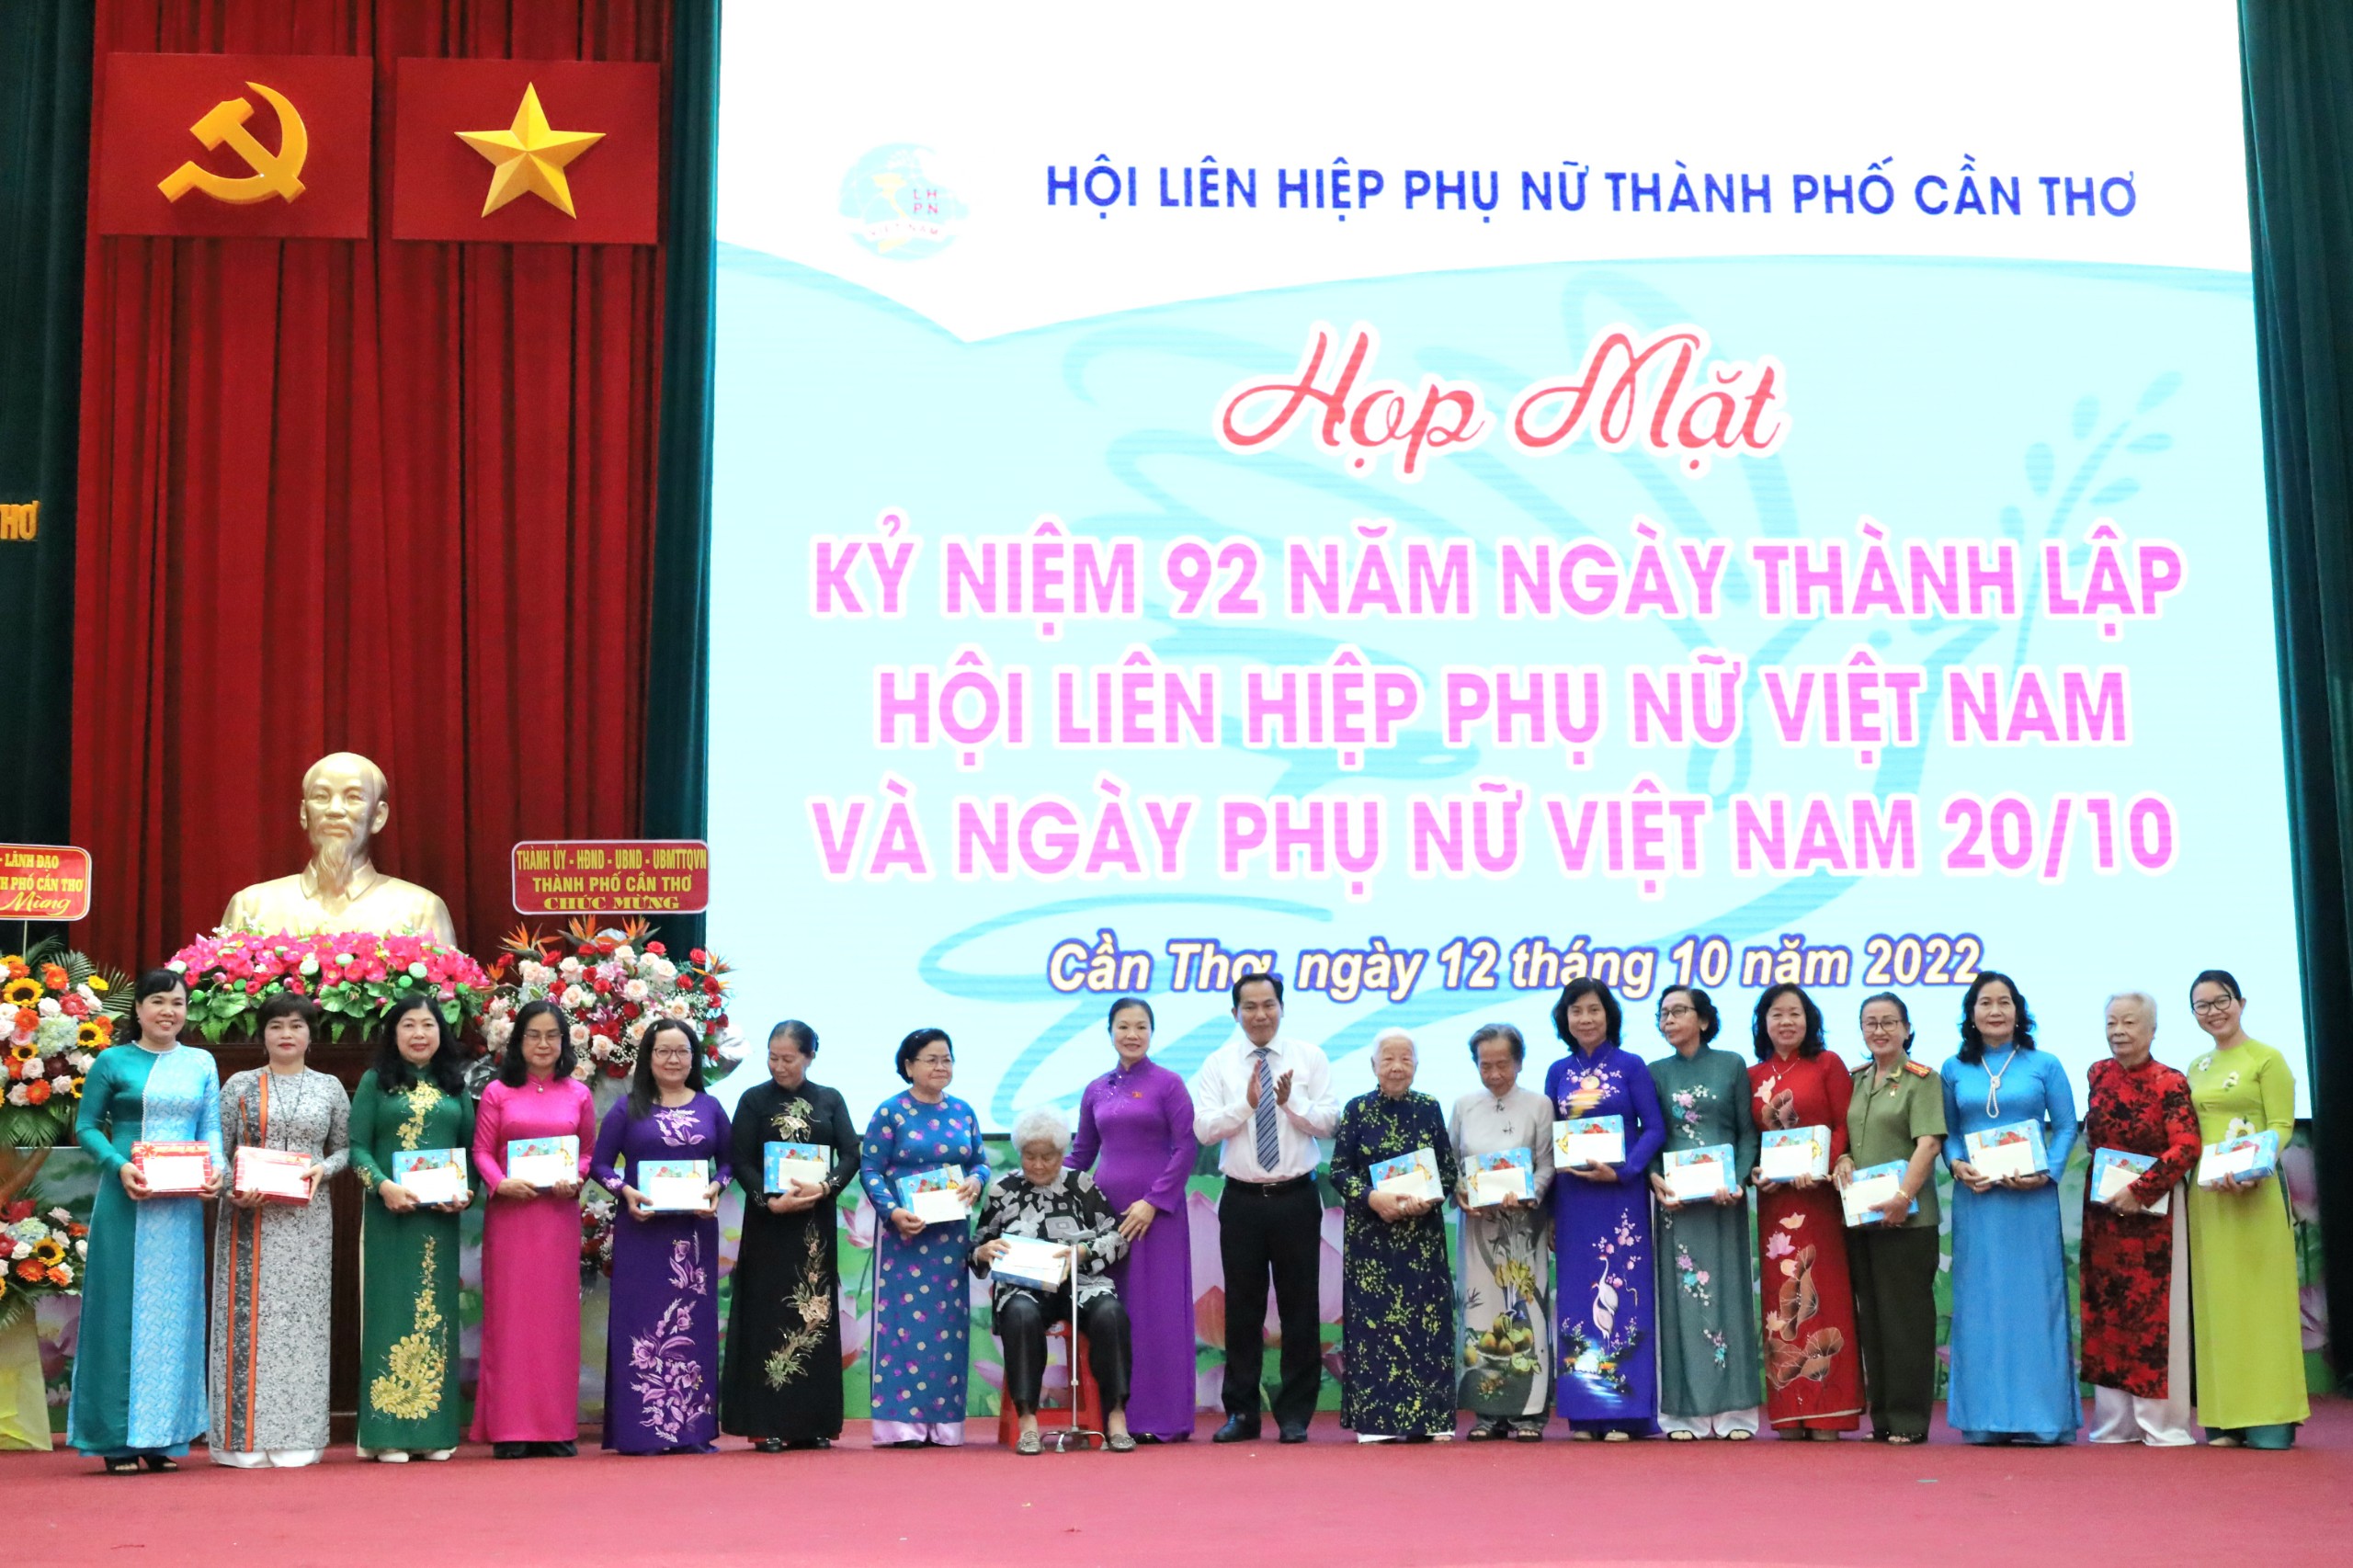 Bà Trương Thị Ngọc Ánh - Phó Chủ tịch Ủy ban Trung ương MTTQVN và ông Lê Quang Mạnh - UV BCH Trung ương Đảng, Bí thư Thành ủy Cần Thơ tặng quà cho các đại biểu.